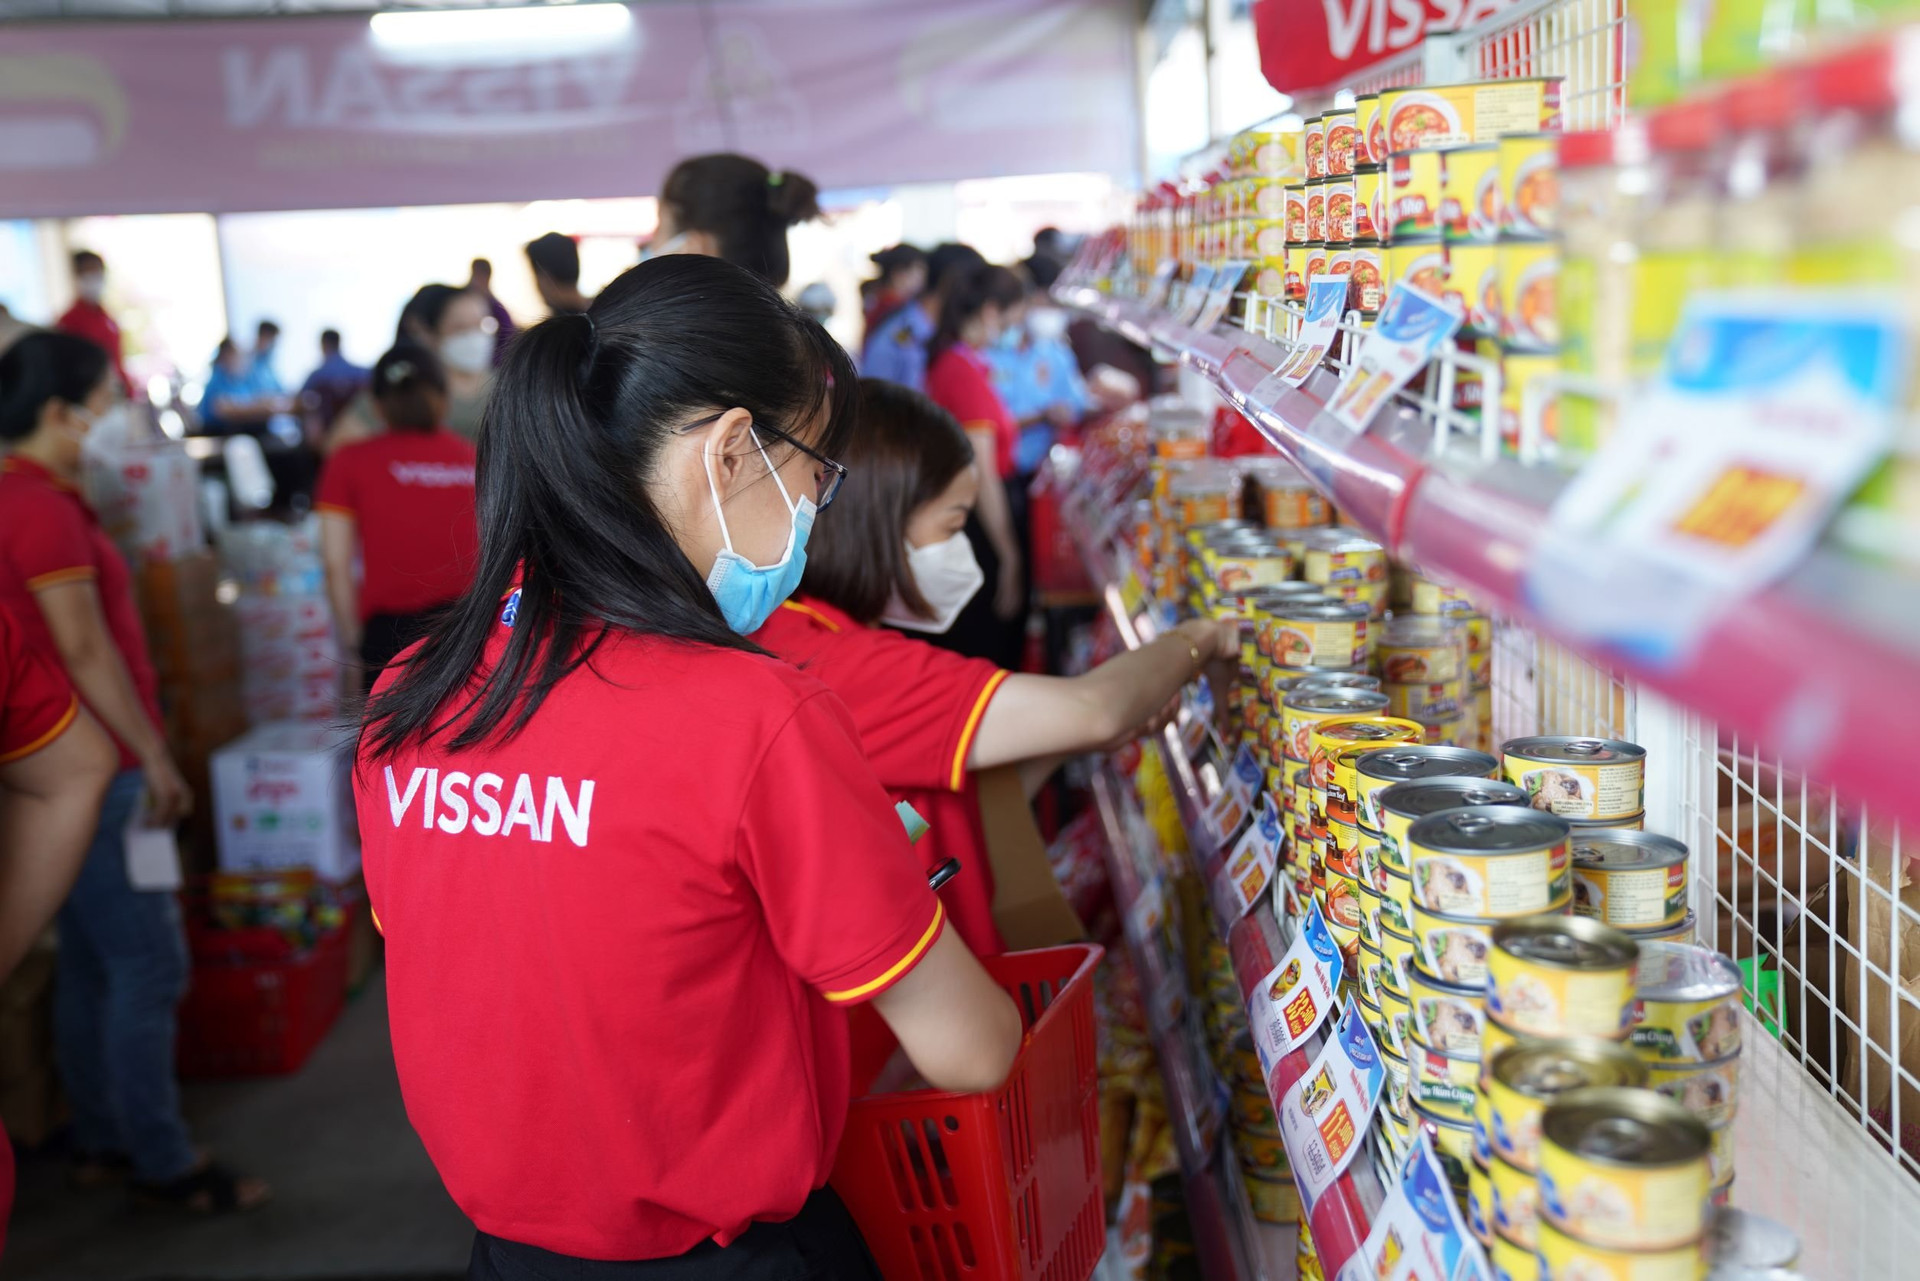 Sau 3 năm sụt giảm, doanh thu Vissan hồi phục quý 4/2022, lấy lại mốc nghìn tỷ